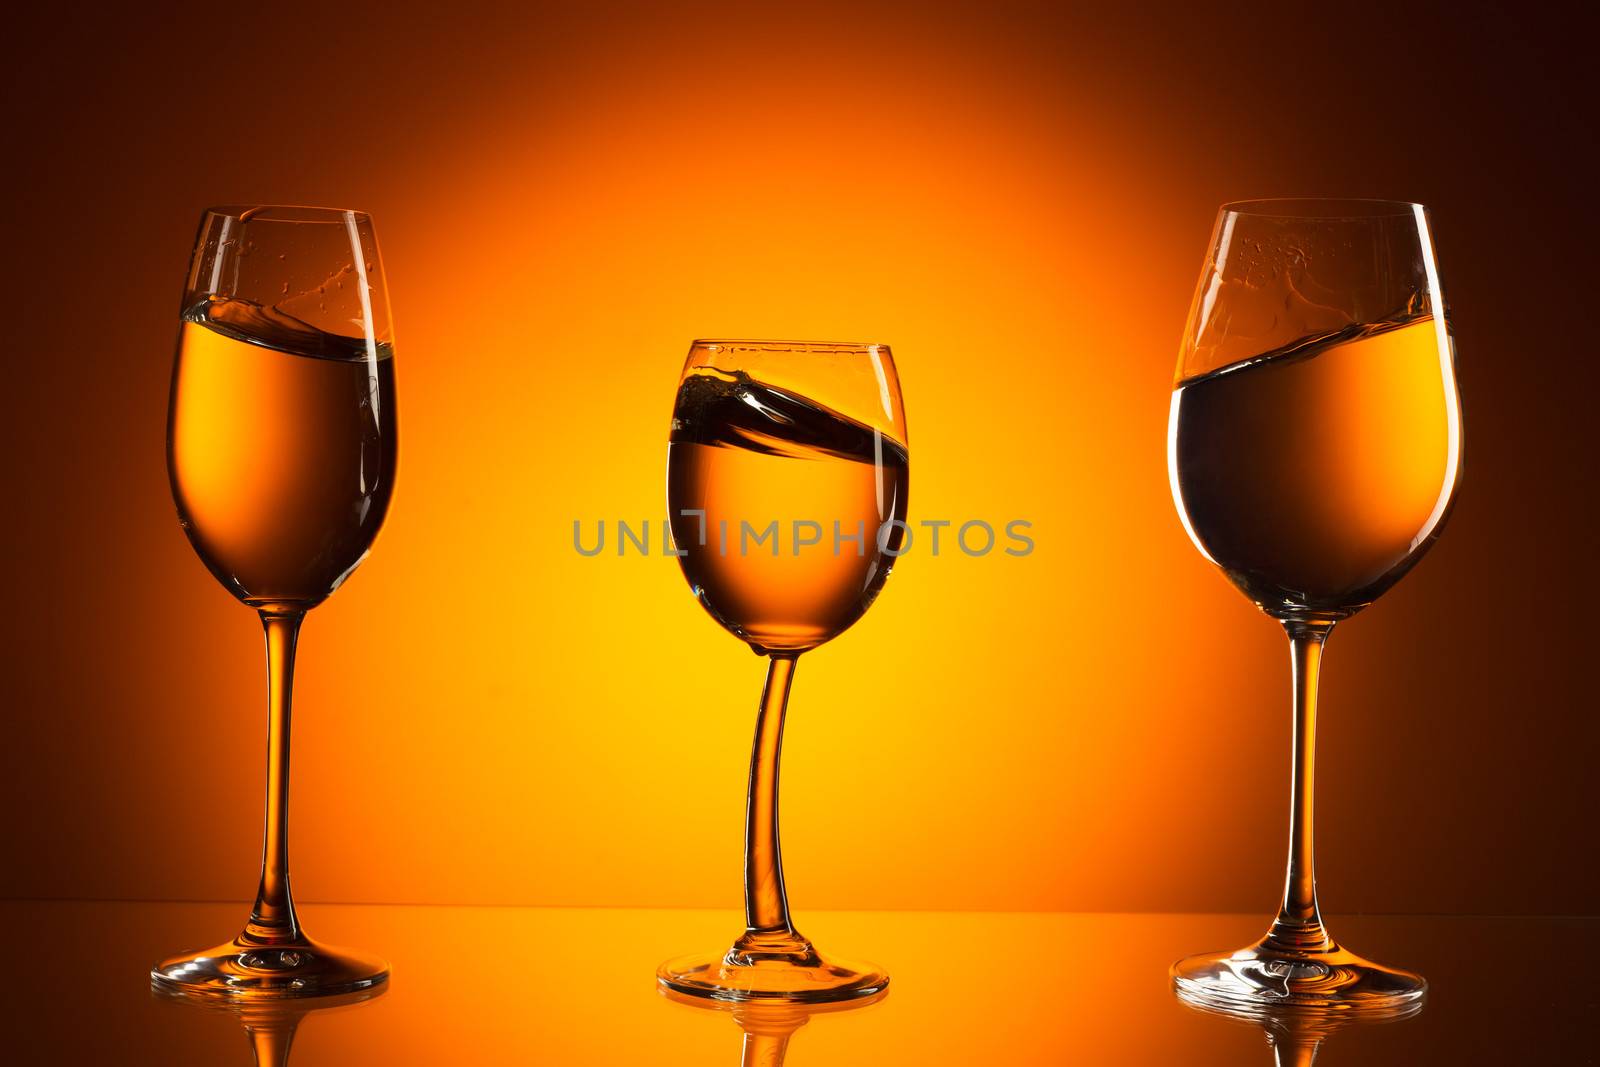 three glasses on orange background by RuslanOmega